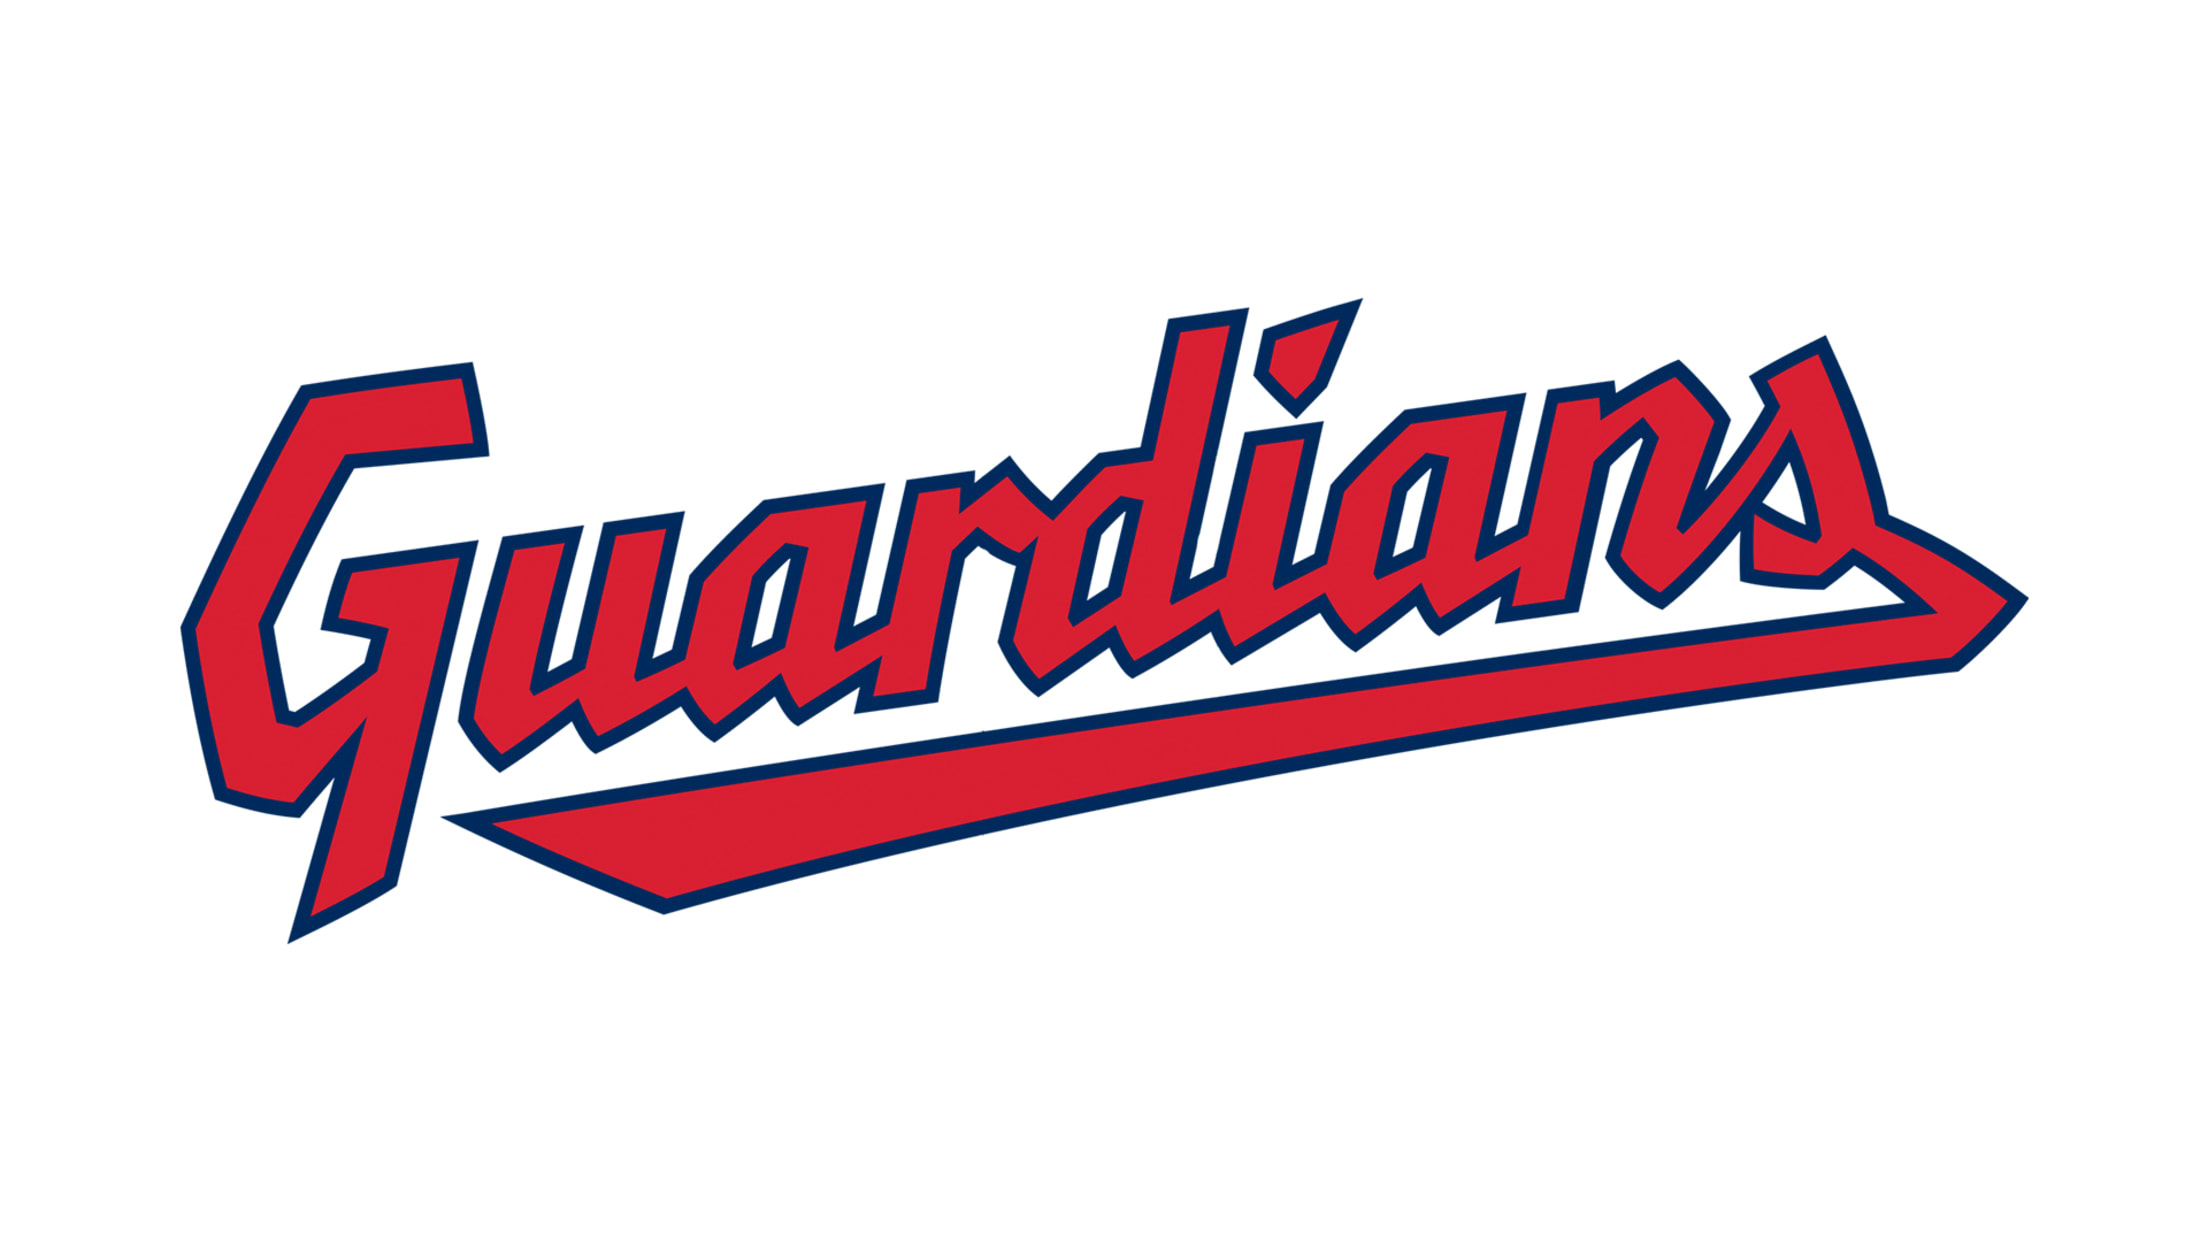 Cleveland Guardians  Cleveland Guardians